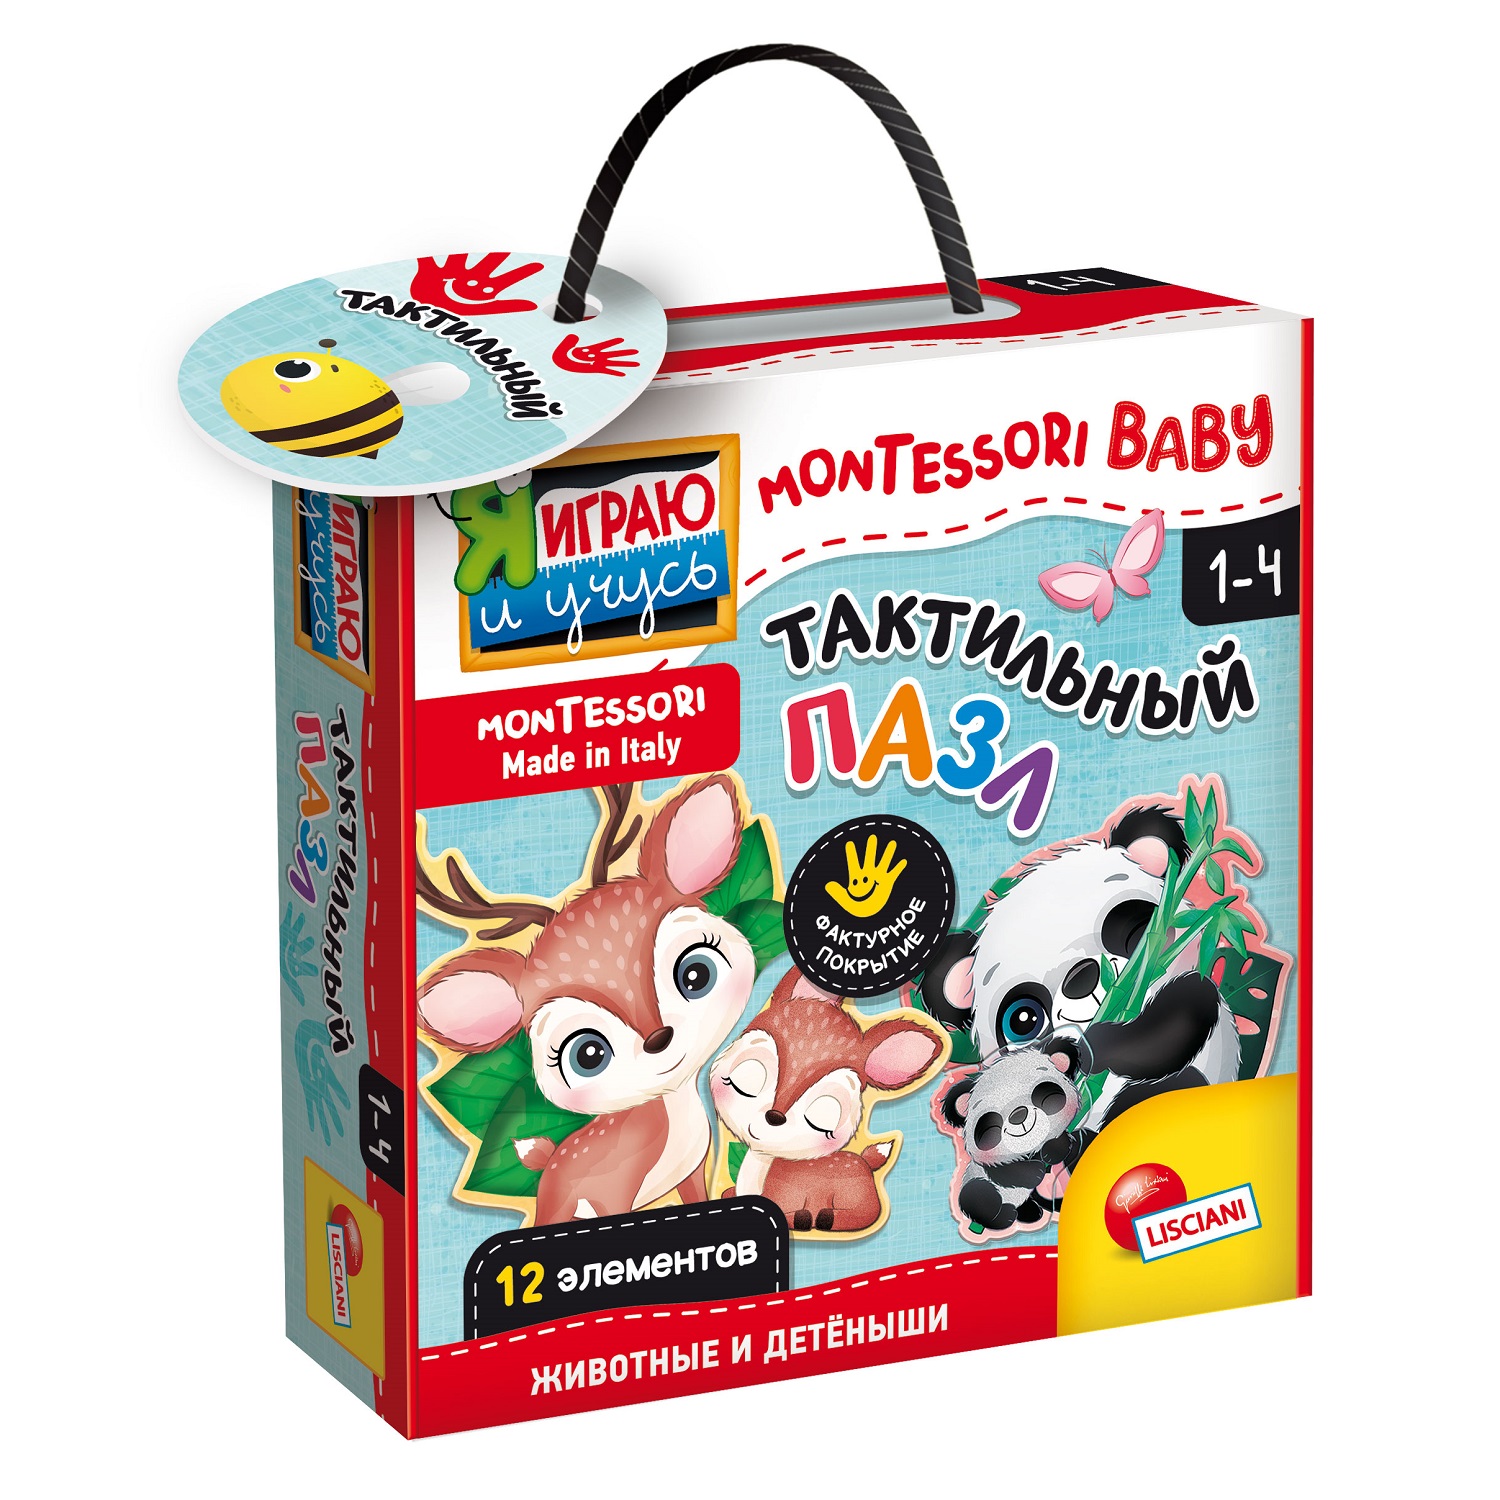 Игра развивающая Lisciani Montessori baby Touch my baby R92673 - фото 1